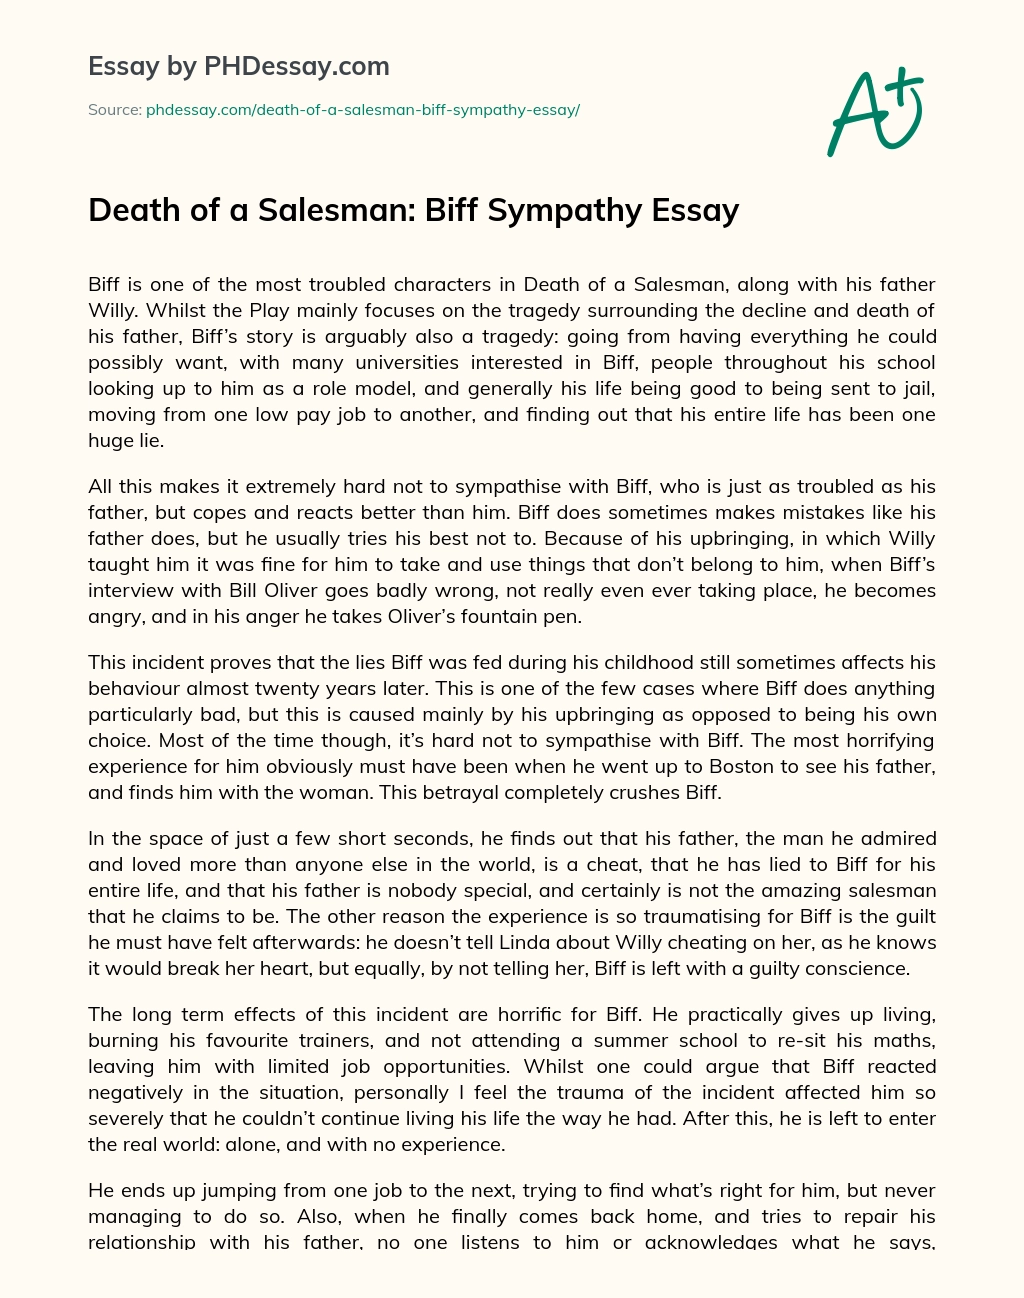 Death of a Salesman: Biff Sympathy Essay essay